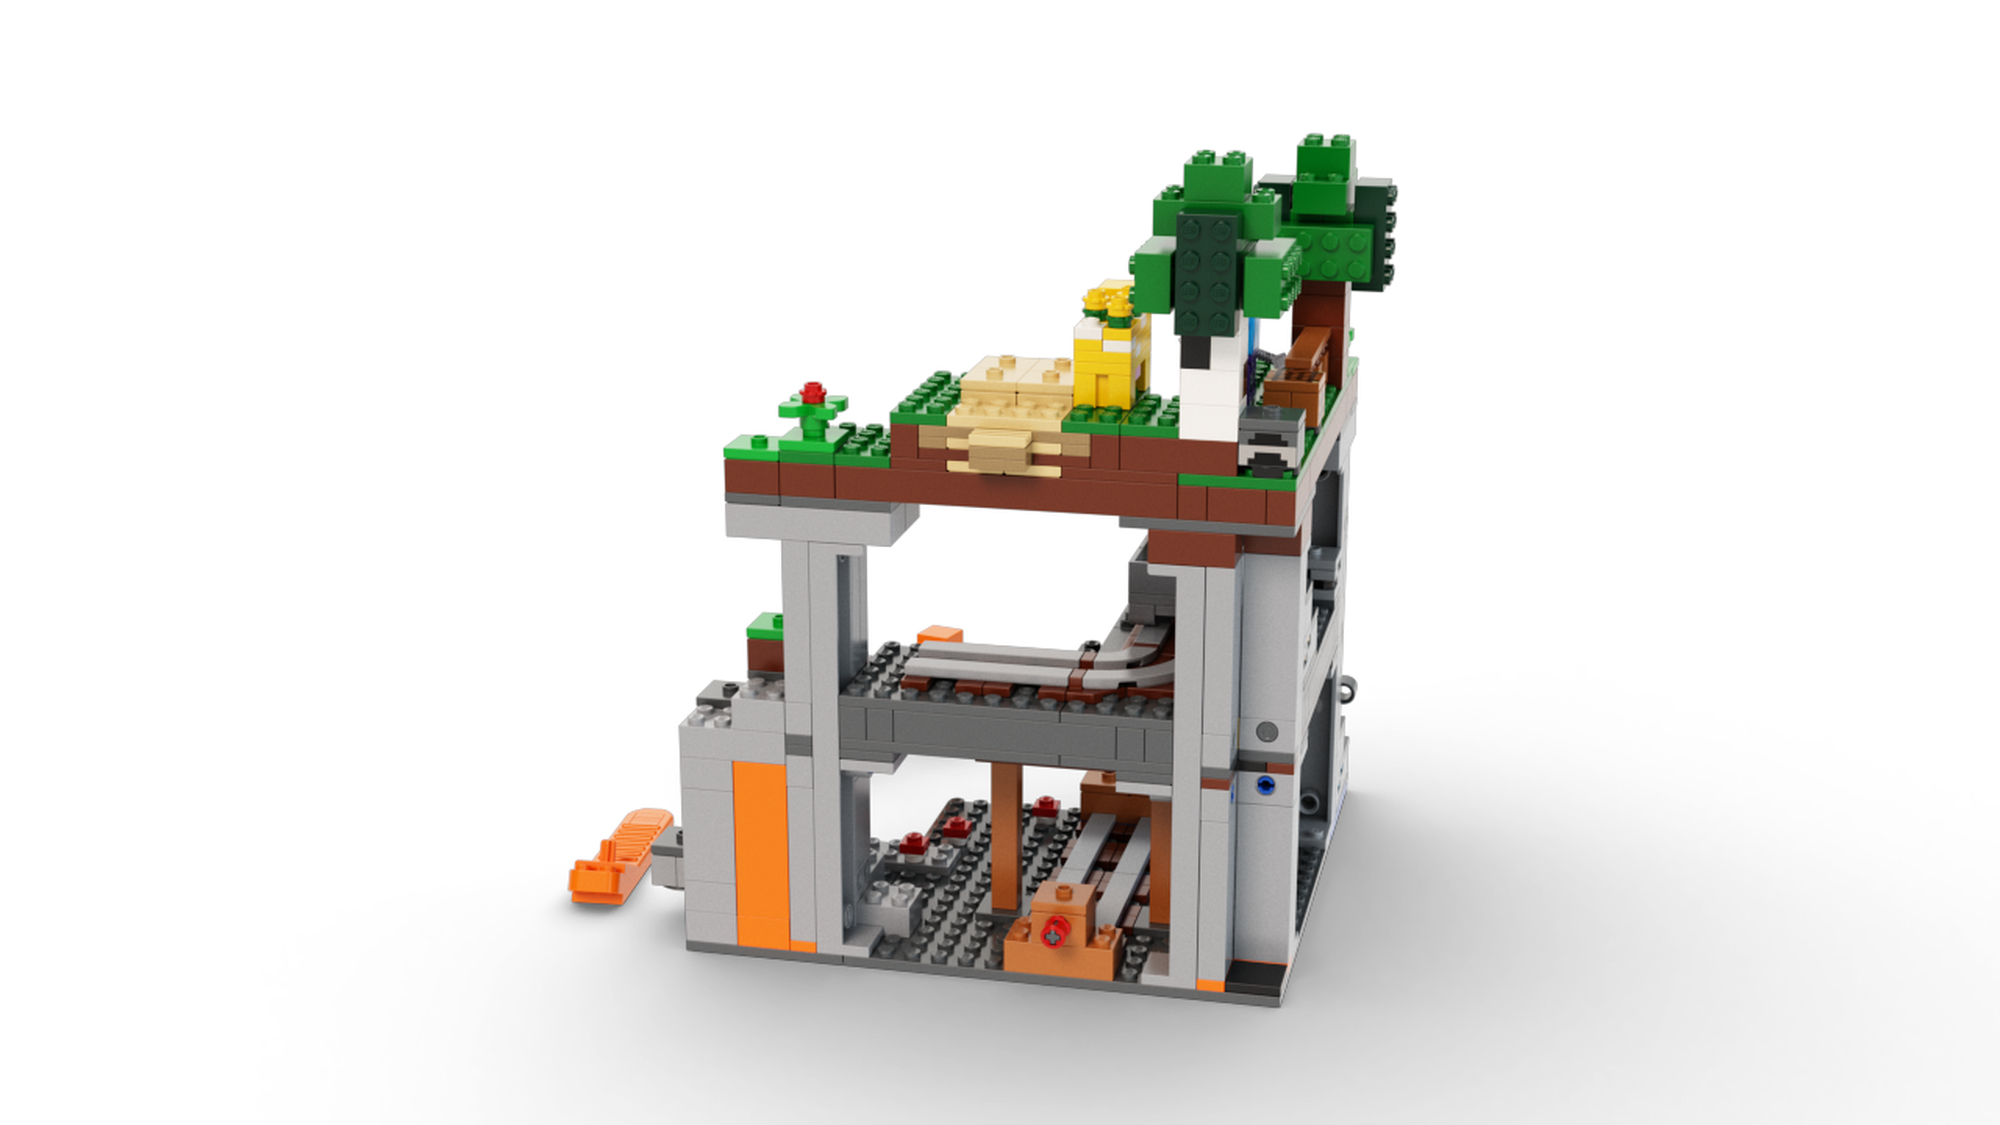 LEGO 21169 The First Adventure | 5702016913873 | BRICKshop LEGO specialist